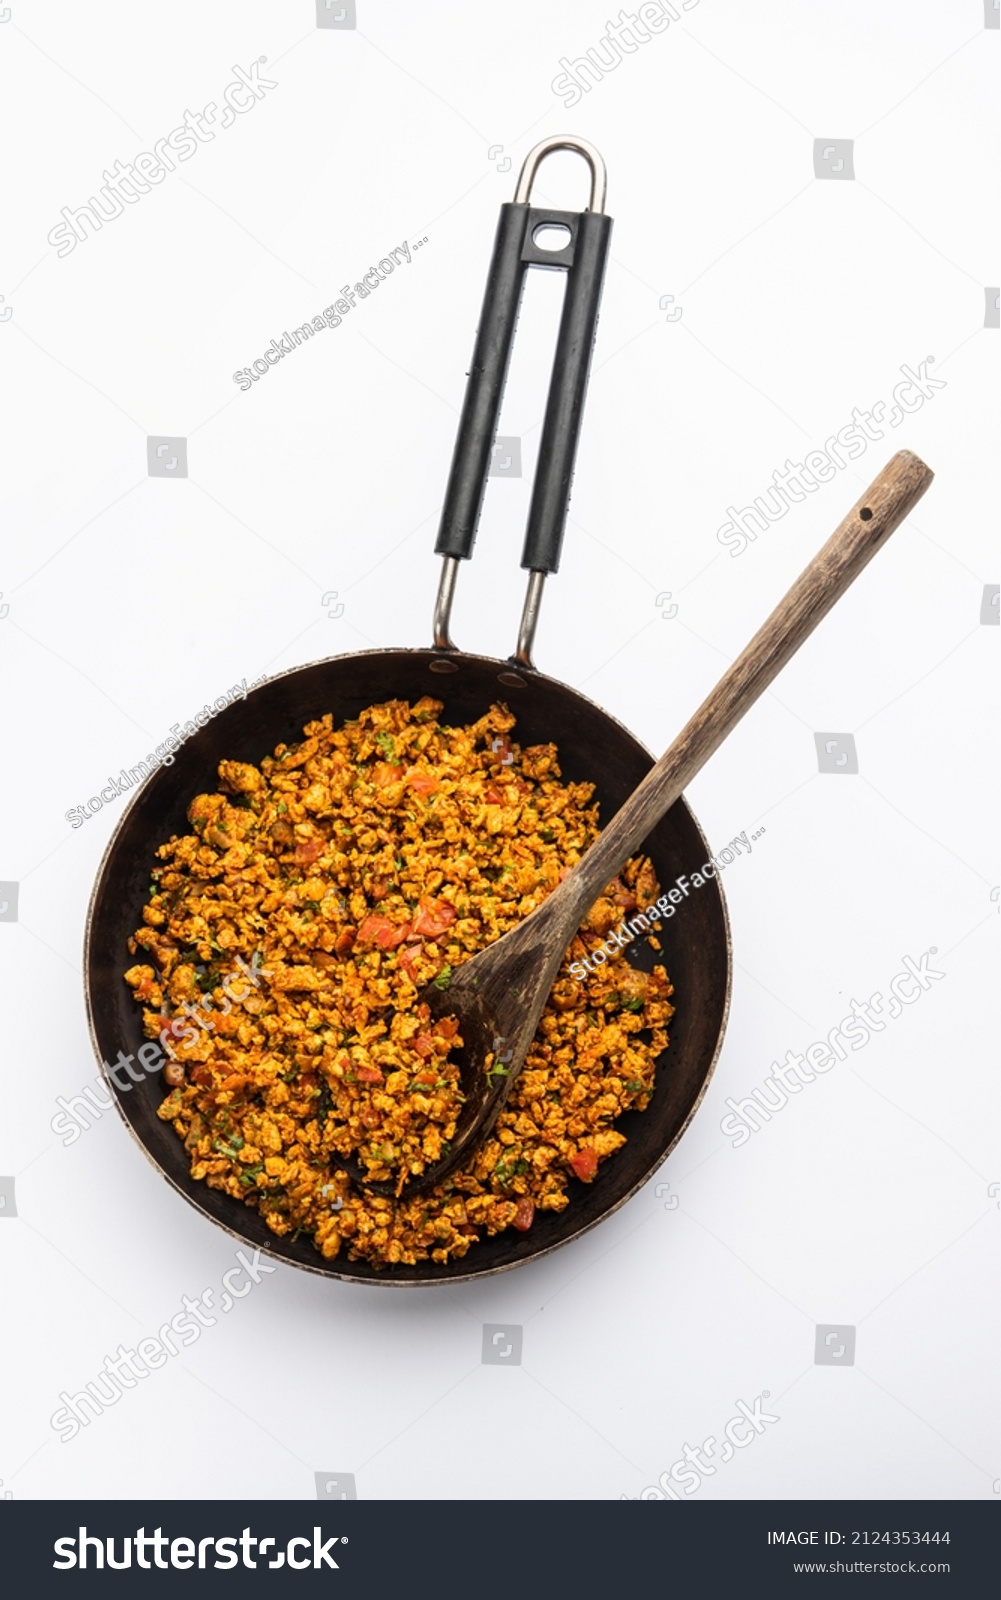 20,20 Indian garlic Images, Stock Photos & Vectors   Shutterstock